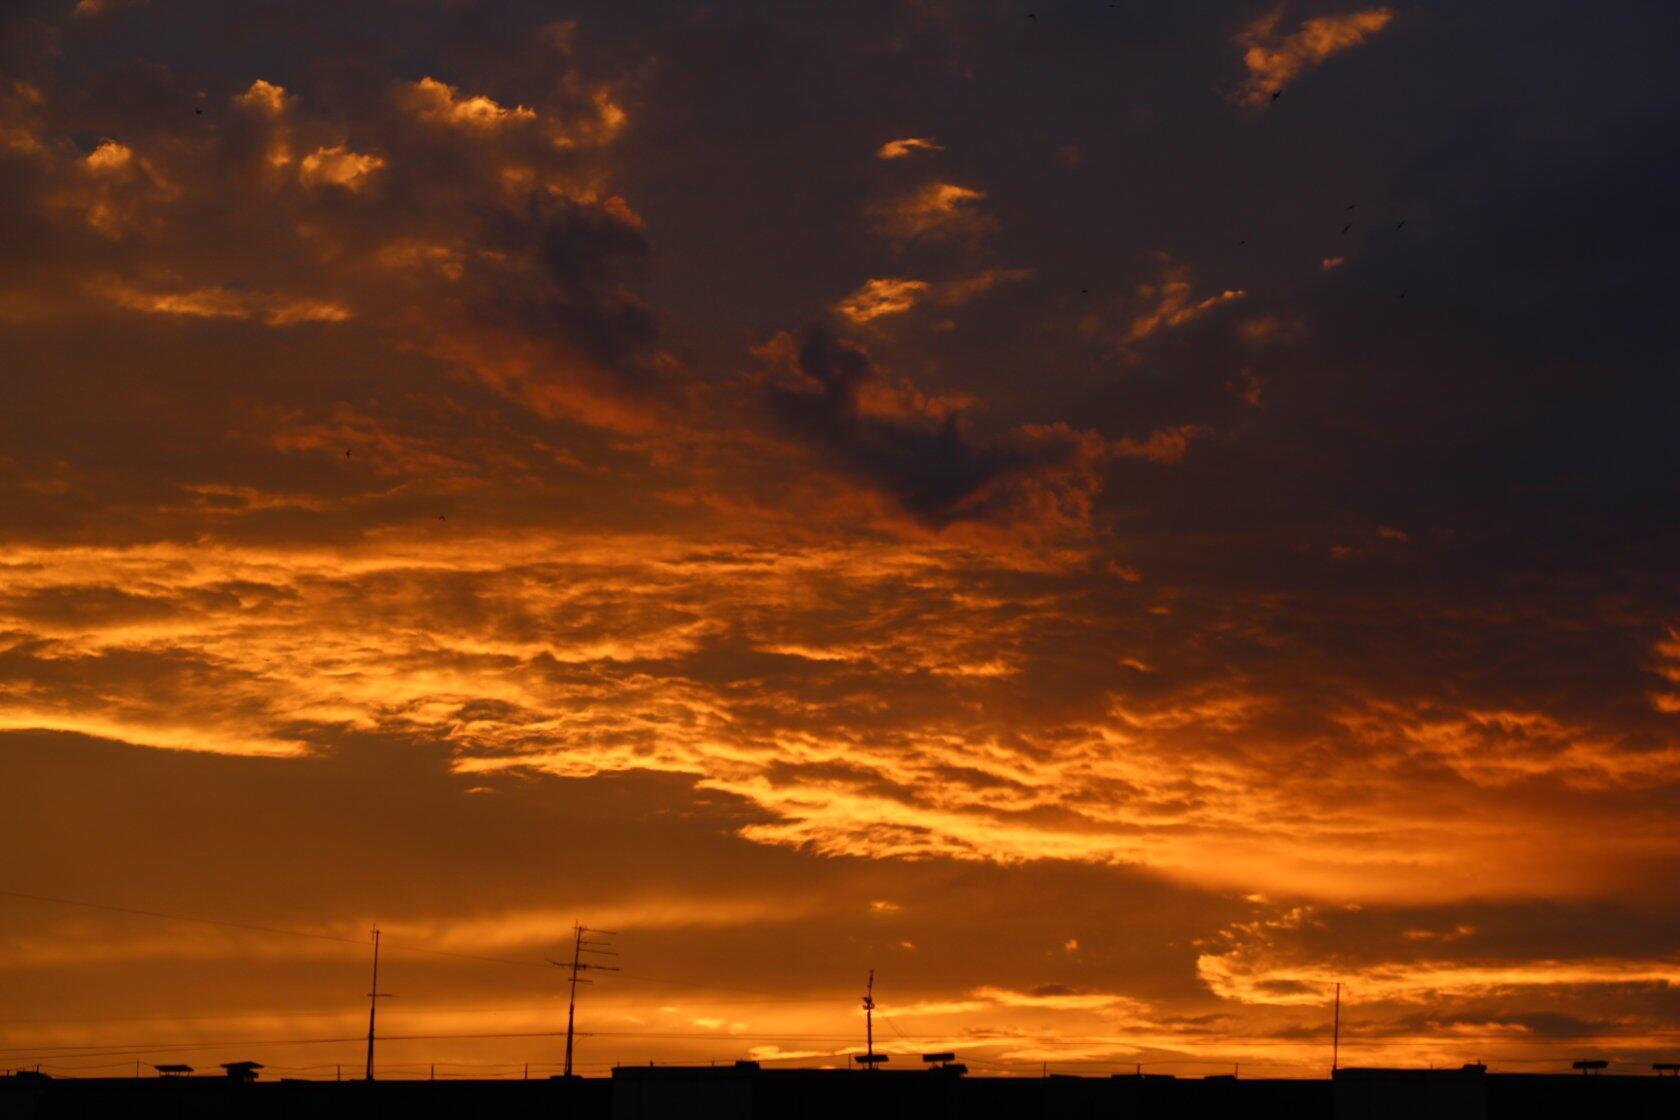 картинки : облако, закат солнца, рассвет, атмосфера, Кучевые облака,  Послесвечение, Метеорологическое явление, Атмосфера земли, Красное небо  утром 3456x5184 - - 165910 - красивые картинки - PxHere